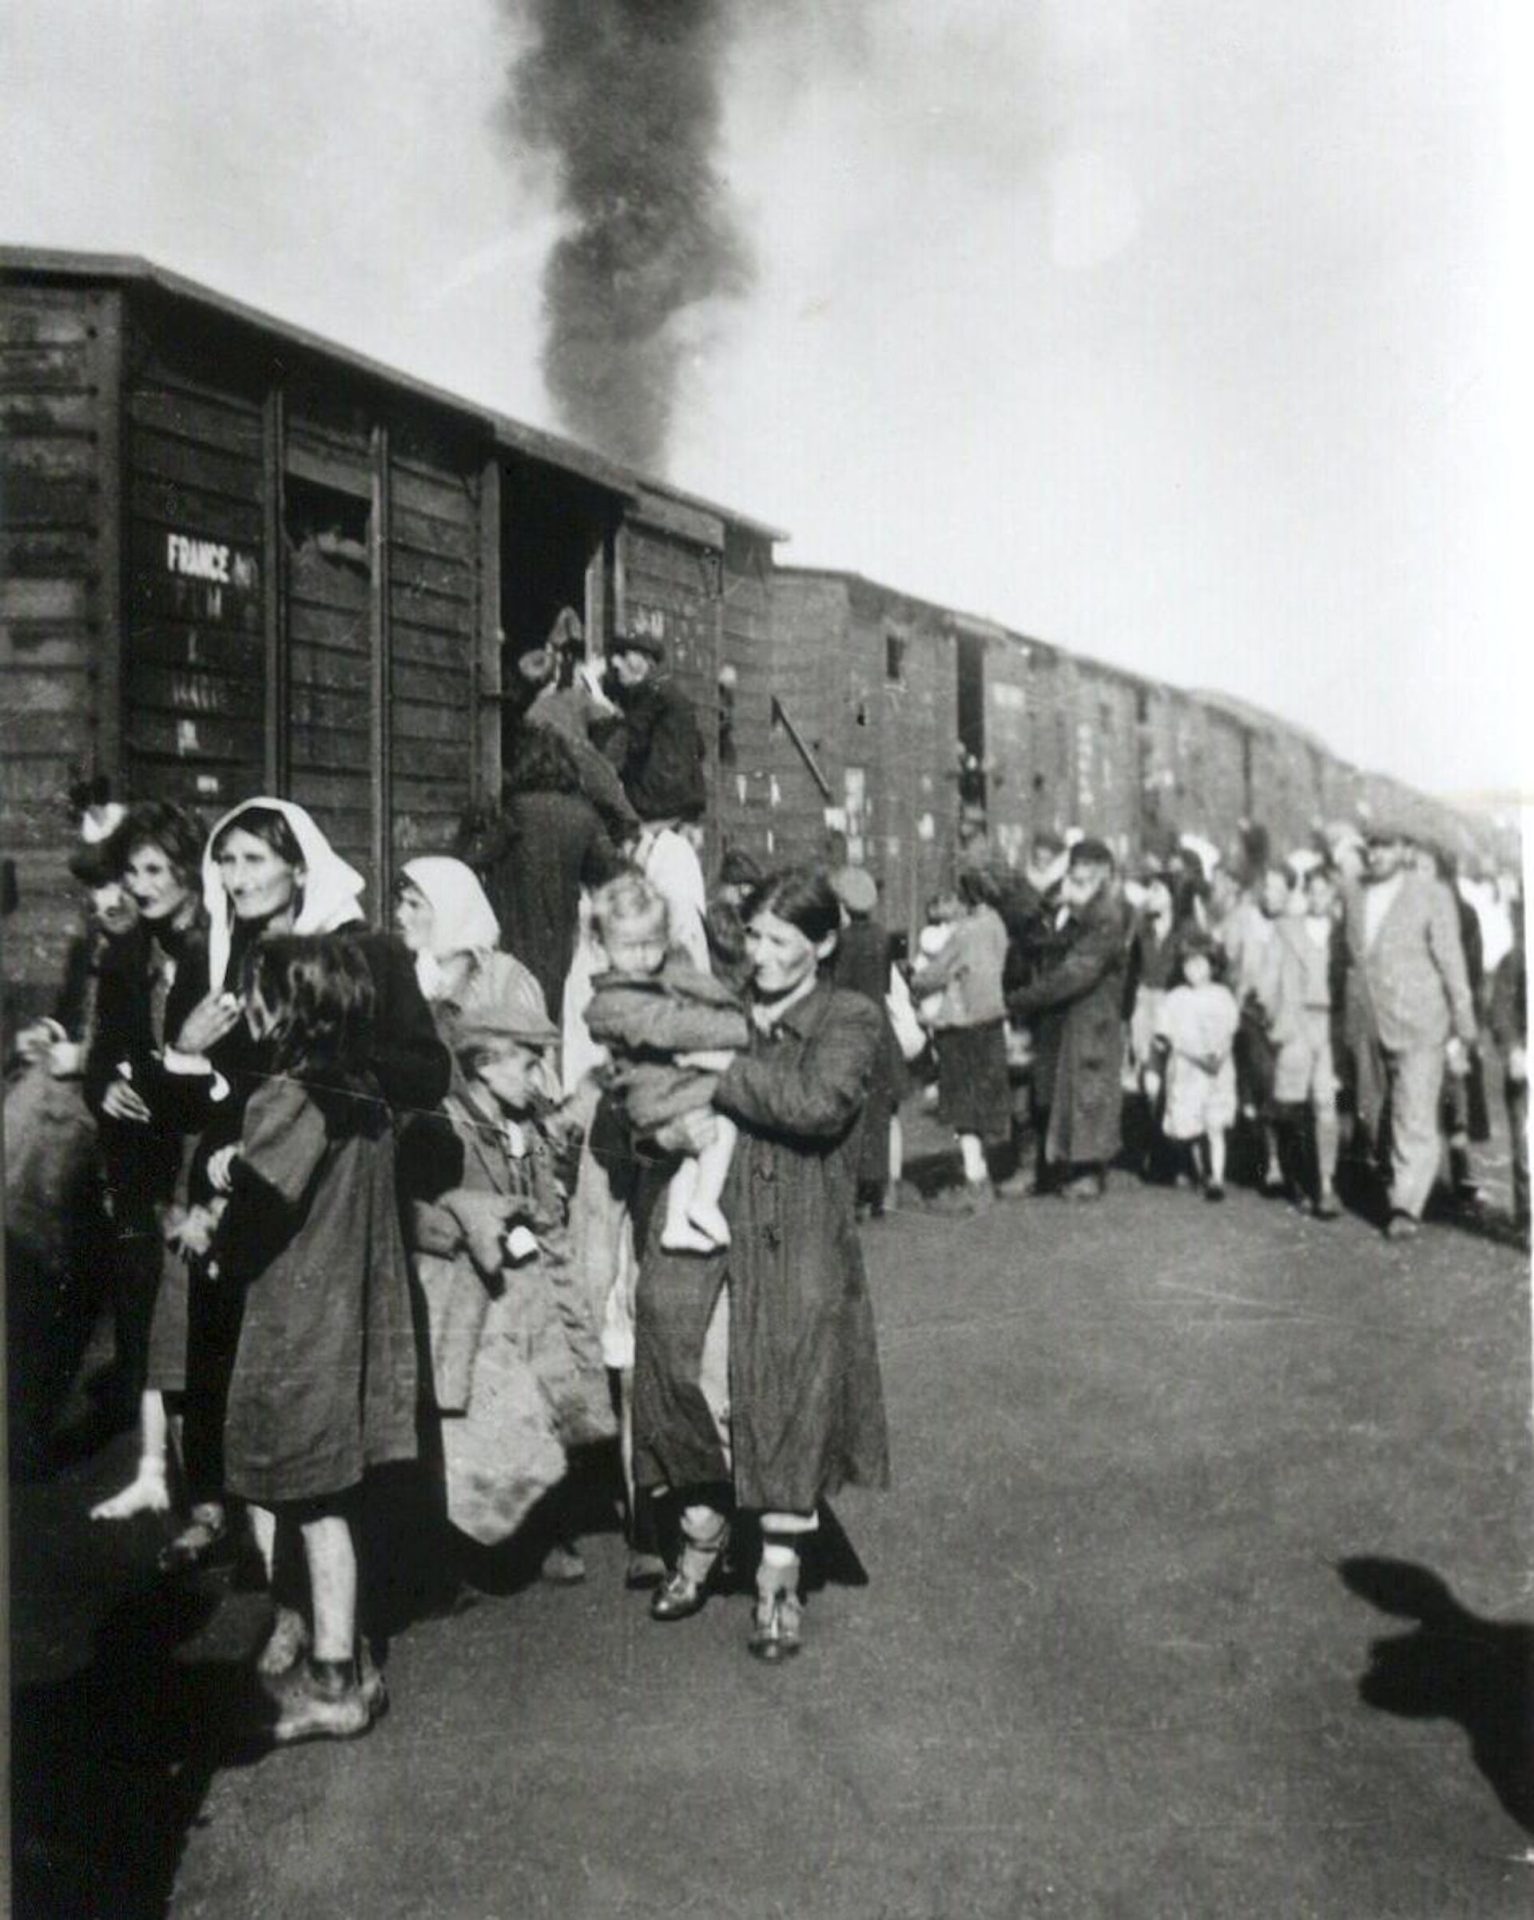 Una foto en blanco y negro muestra a mujeres y niños con abrigos caminando junto a vagones de ganado.